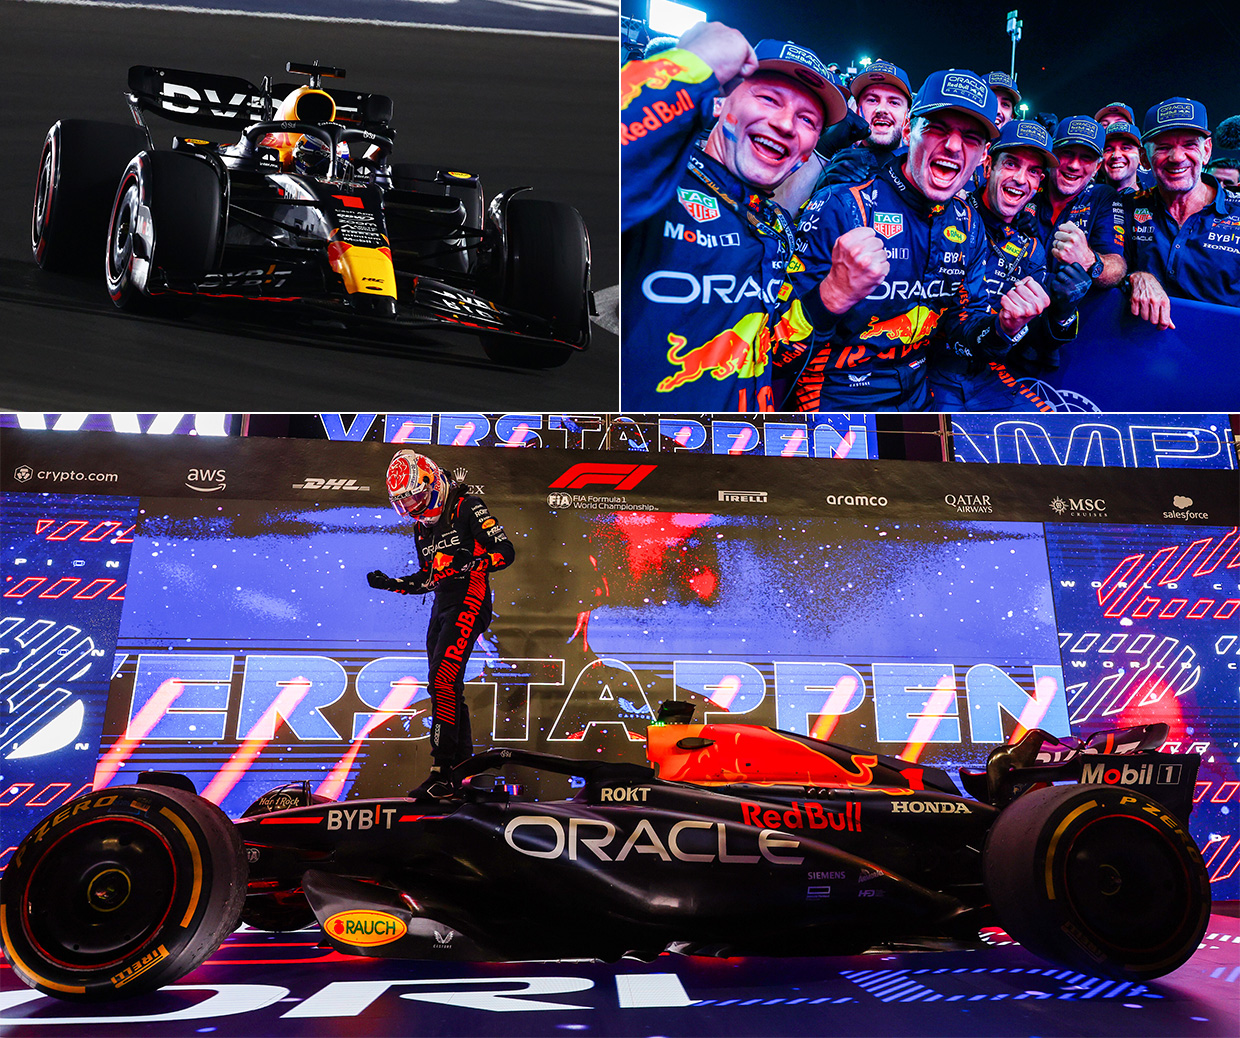 オラクル・レッドブル・レーシングのマックス・フェルスタッペン選手がF1ドライバーズチャンピオン3連覇を達成 | Honda 企業情報サイト